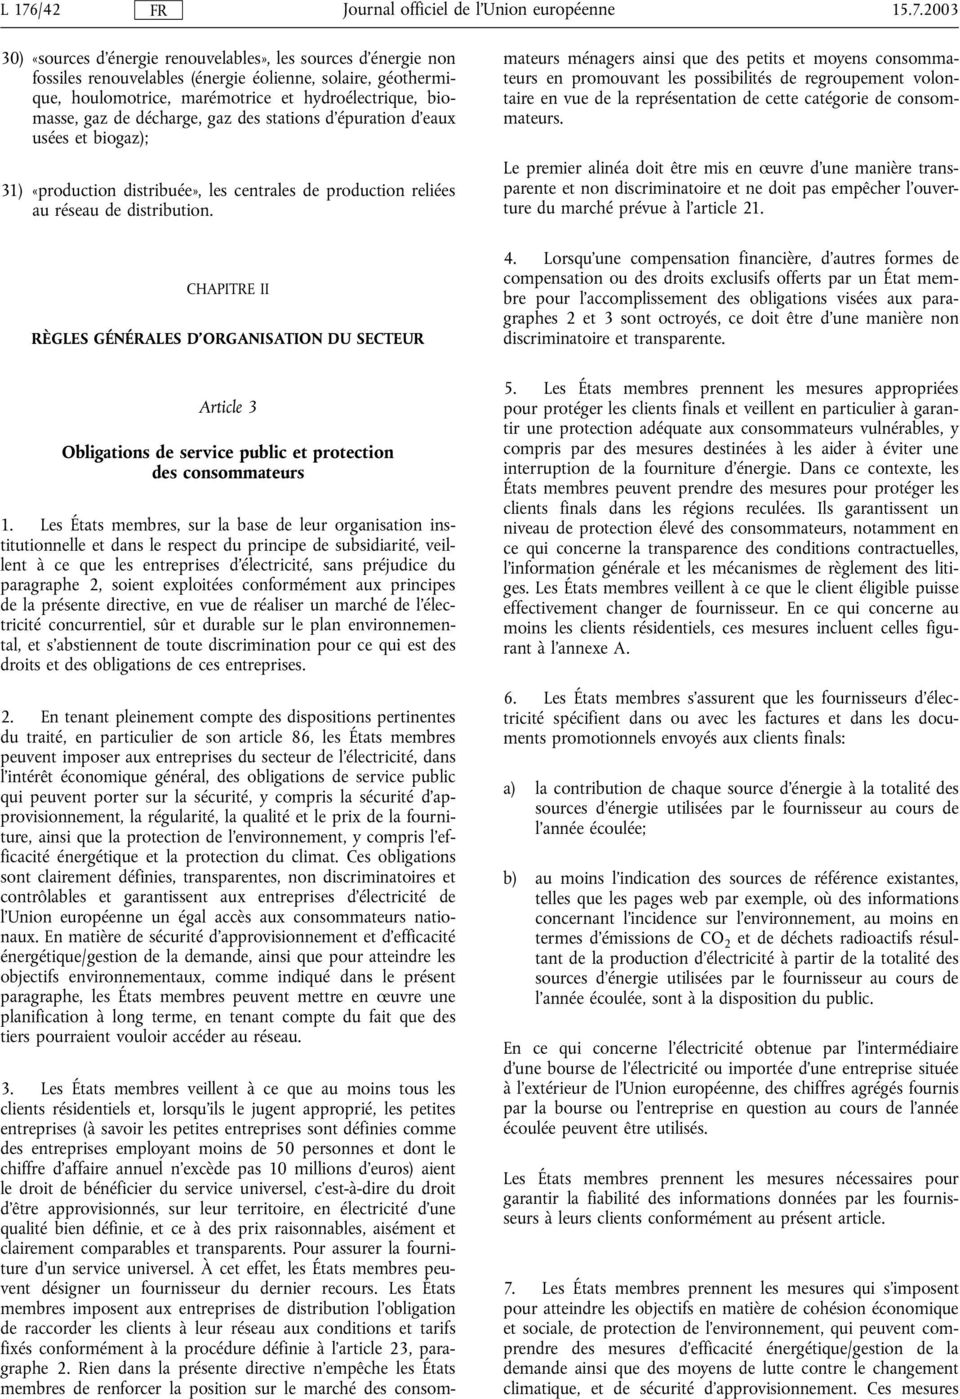 CHAPITRE II RÈGLES GÉNÉRALES D'ORGANISATION DU SECTEUR 3.